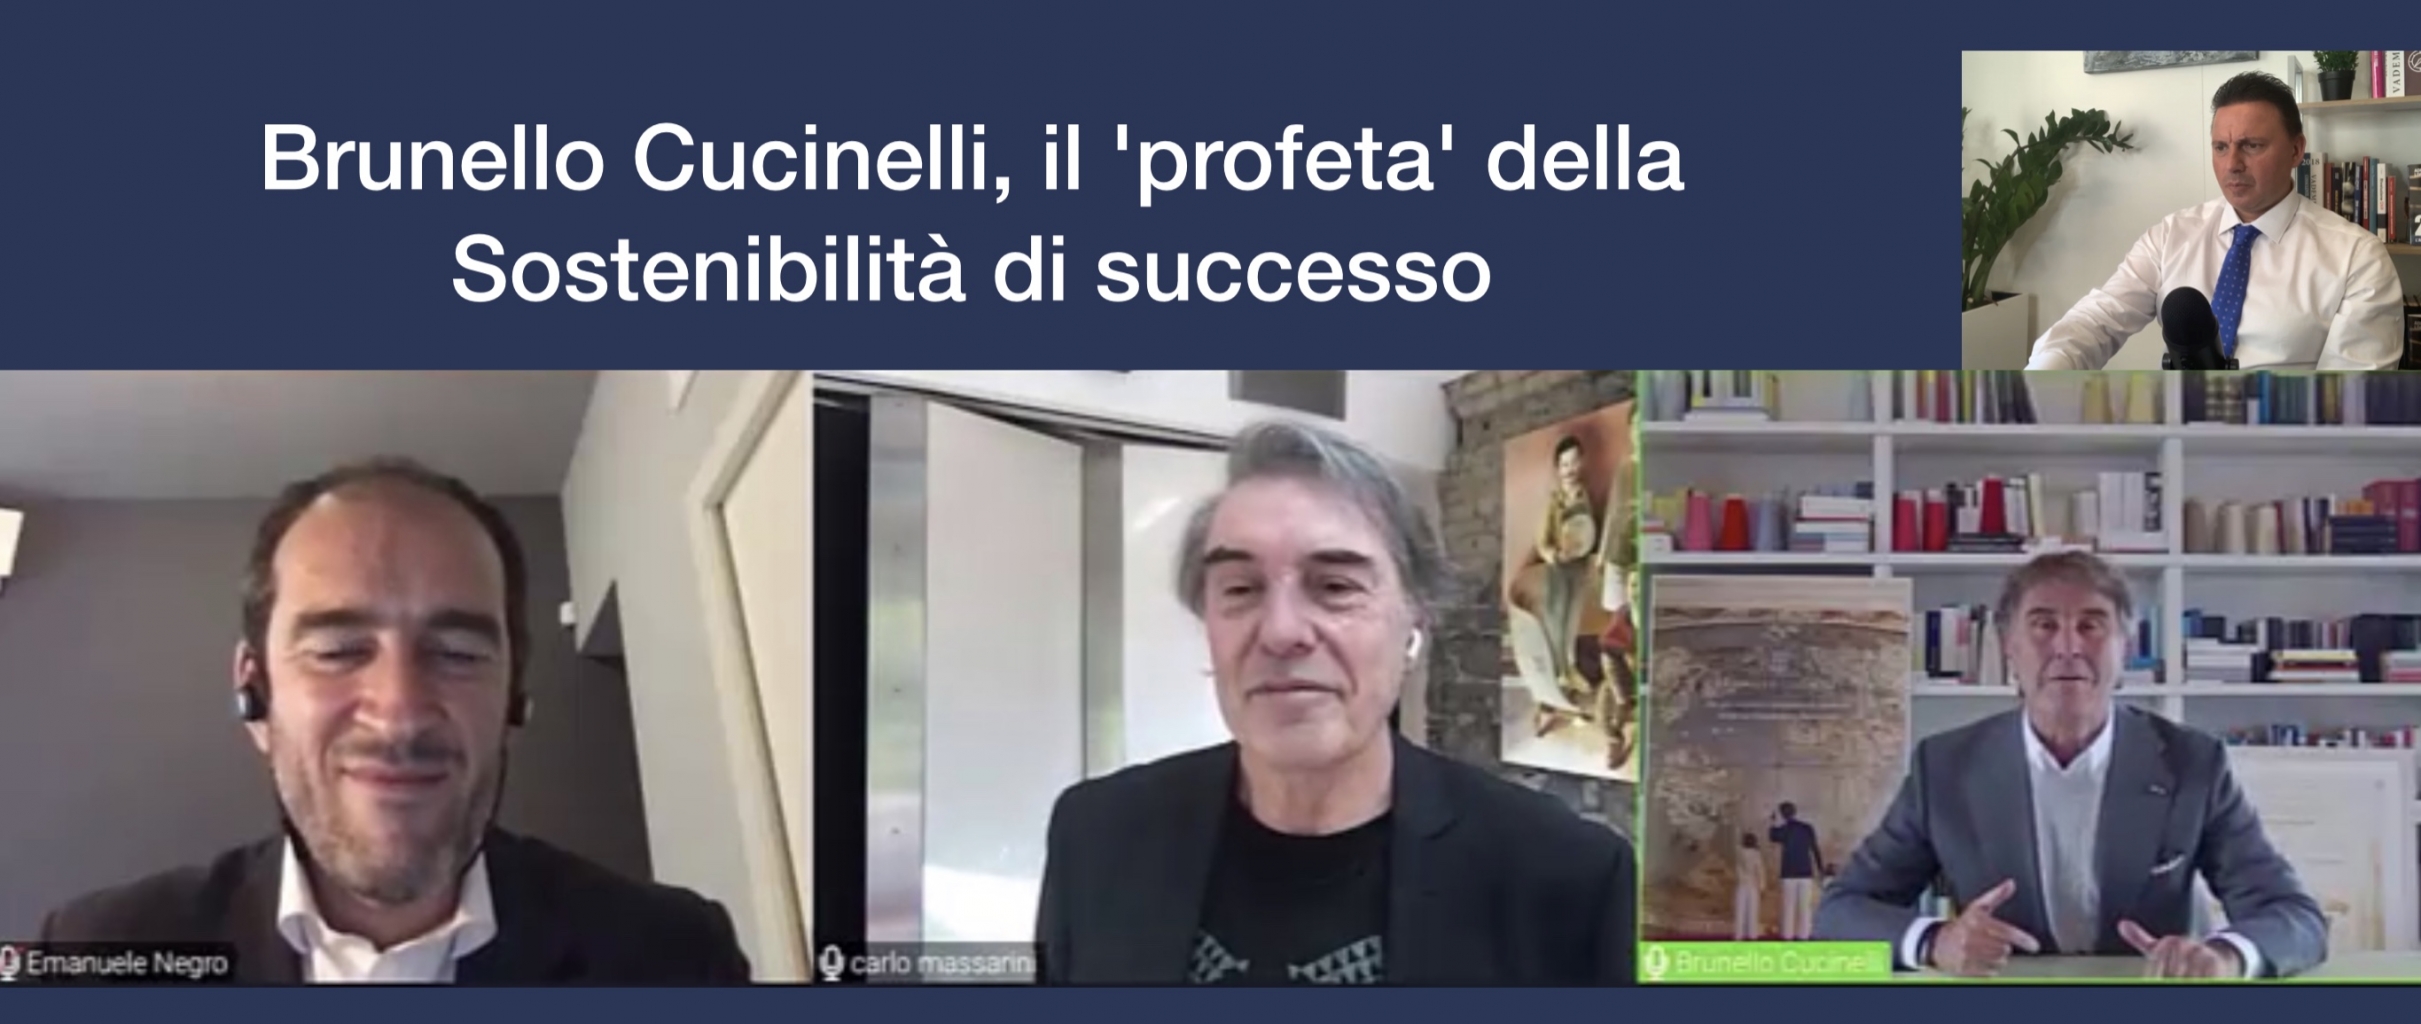 Brunello Cucinelli, il 'profeta' della Sostenibilità di successo